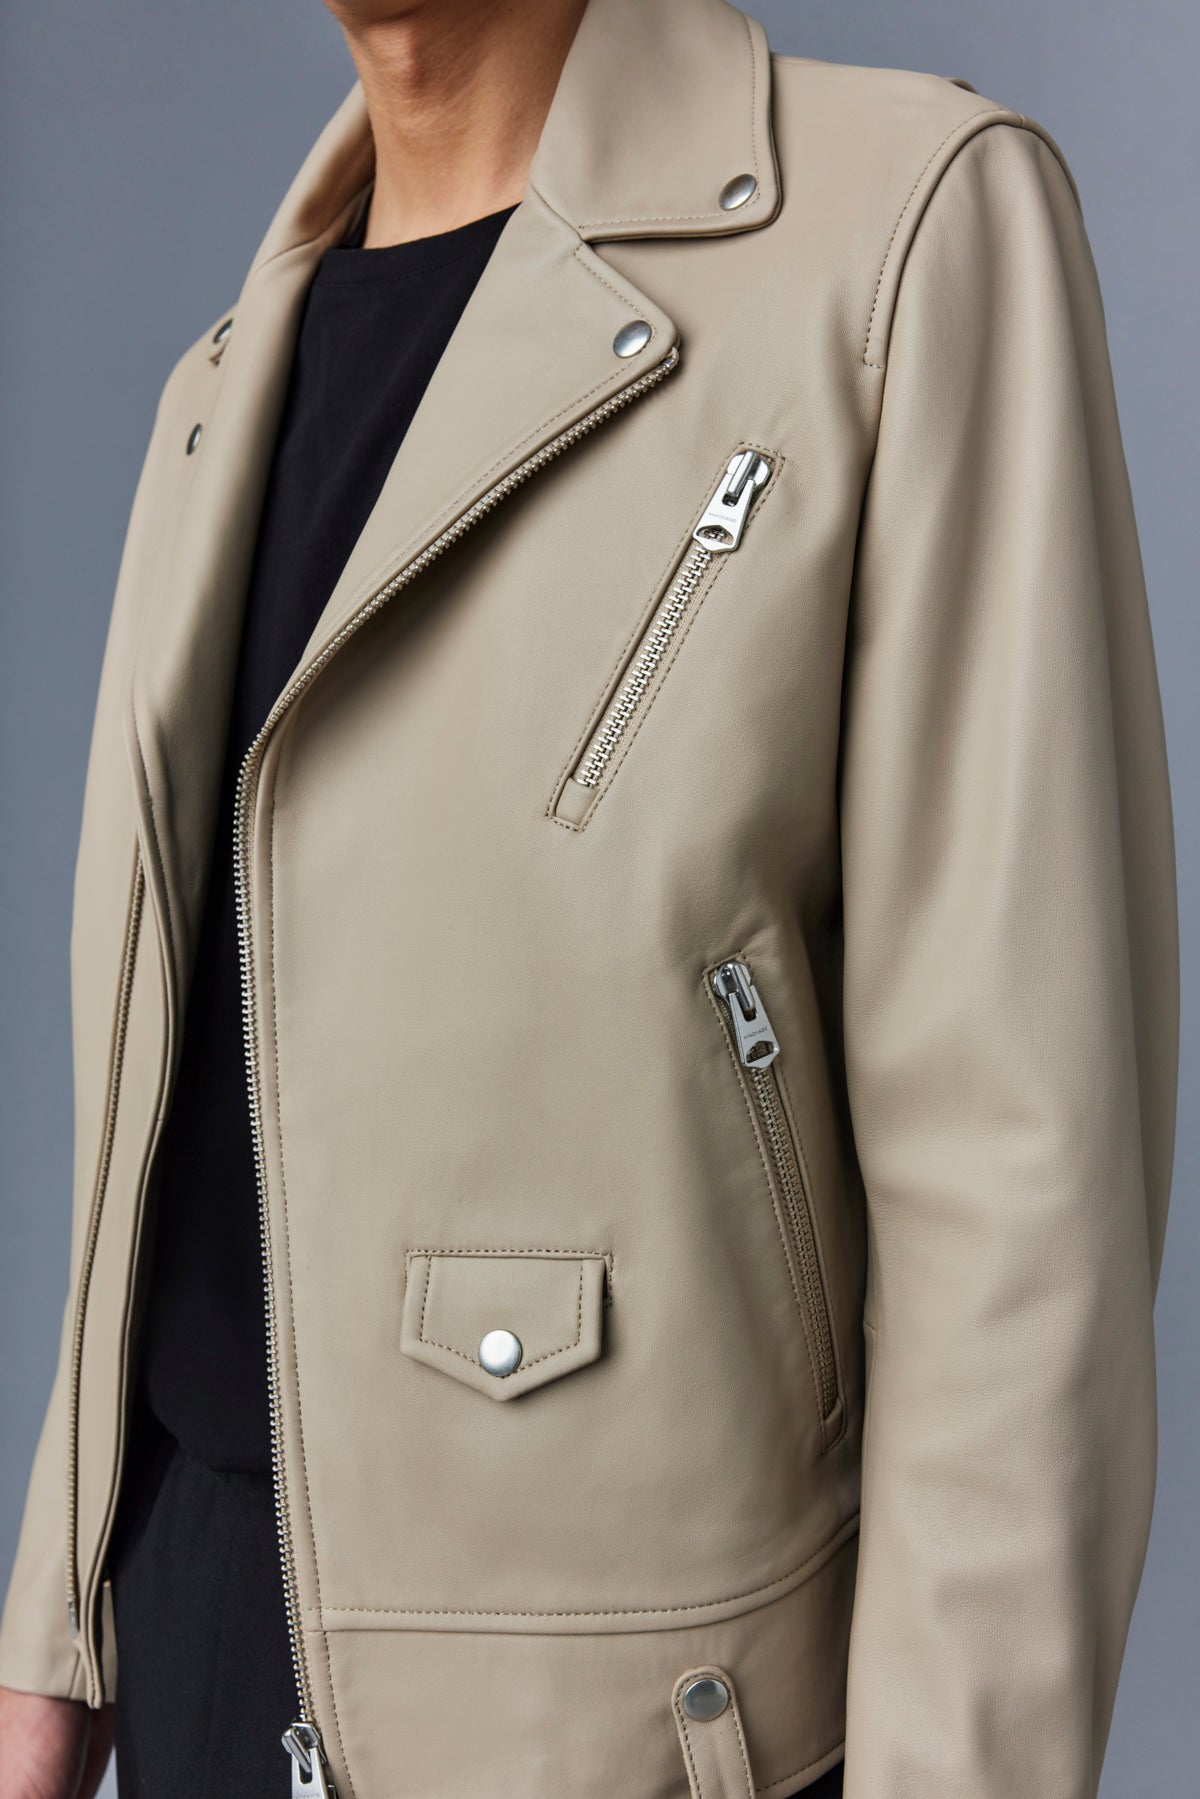 Louis Vuitton XXL Zipper Leather Coat BLACK. Size 36